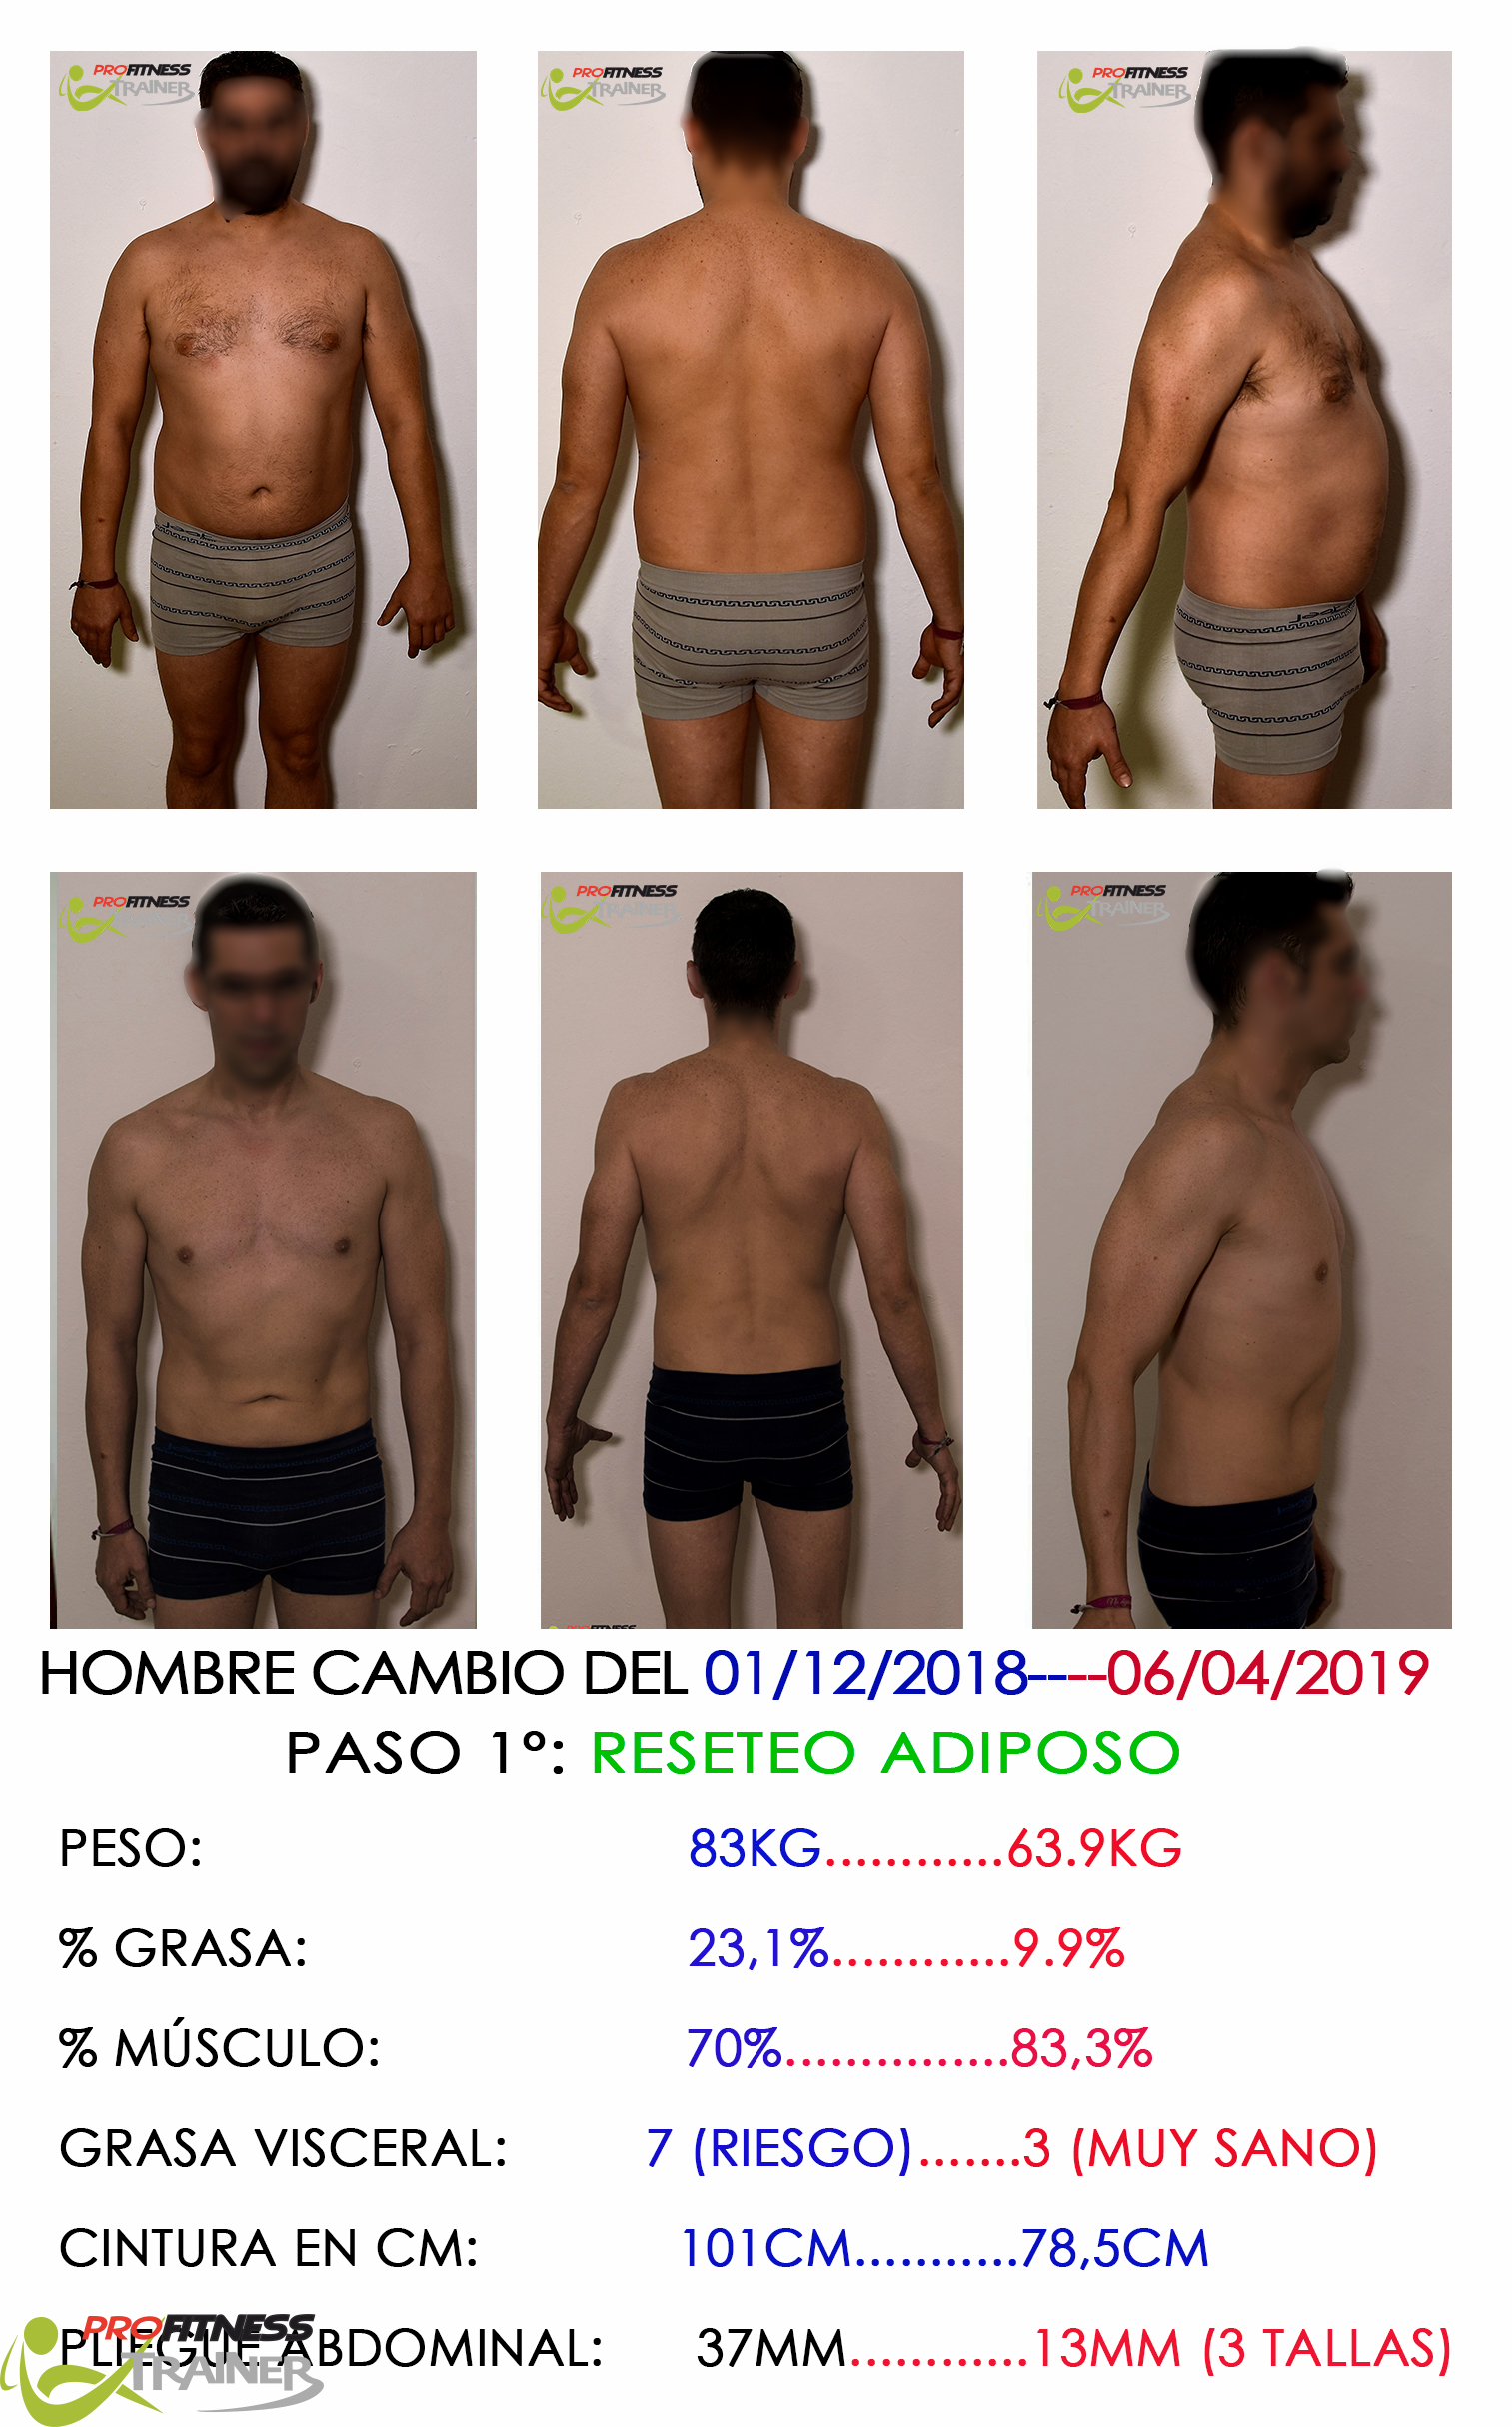 Carlos del Pino Profitness Trainer - Casos Reales